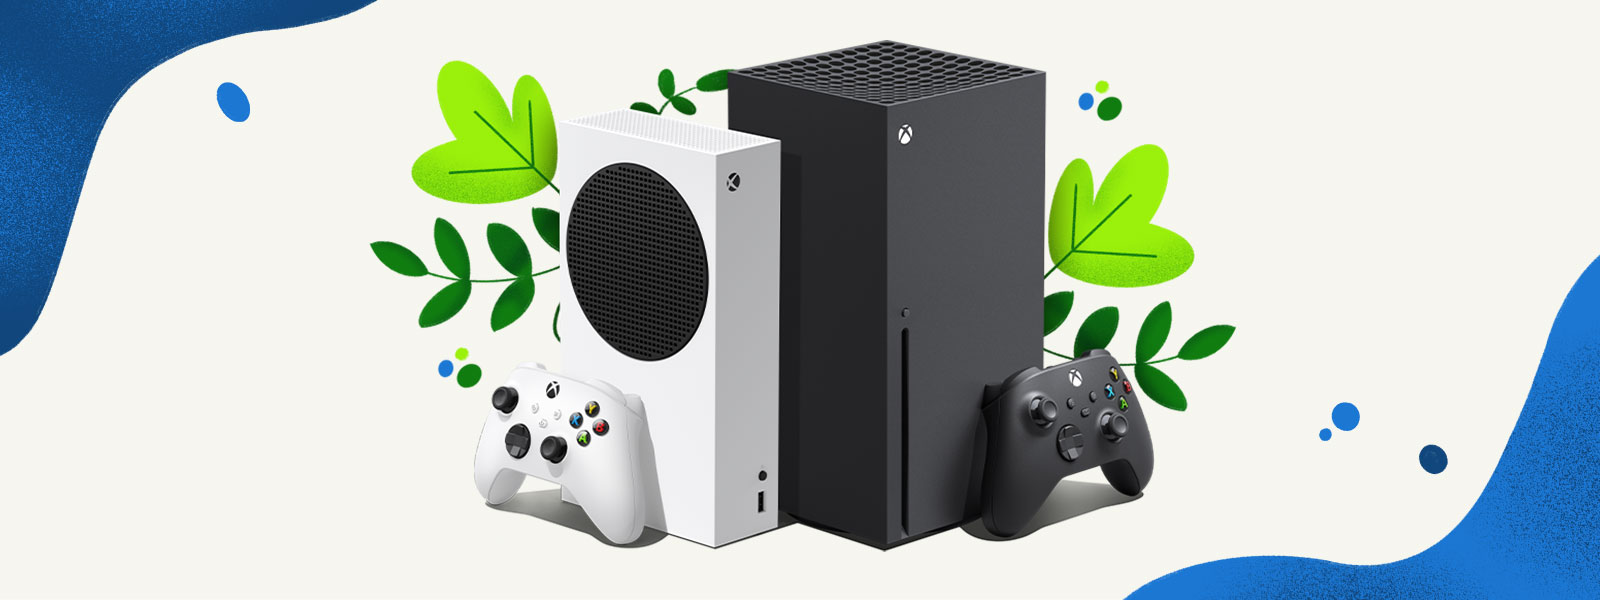 Des consoles Xbox Series X et Xbox Series S posées côte à côte, devant un arrière-plan décoratif composé de plantes et de projections d'eau bleue.